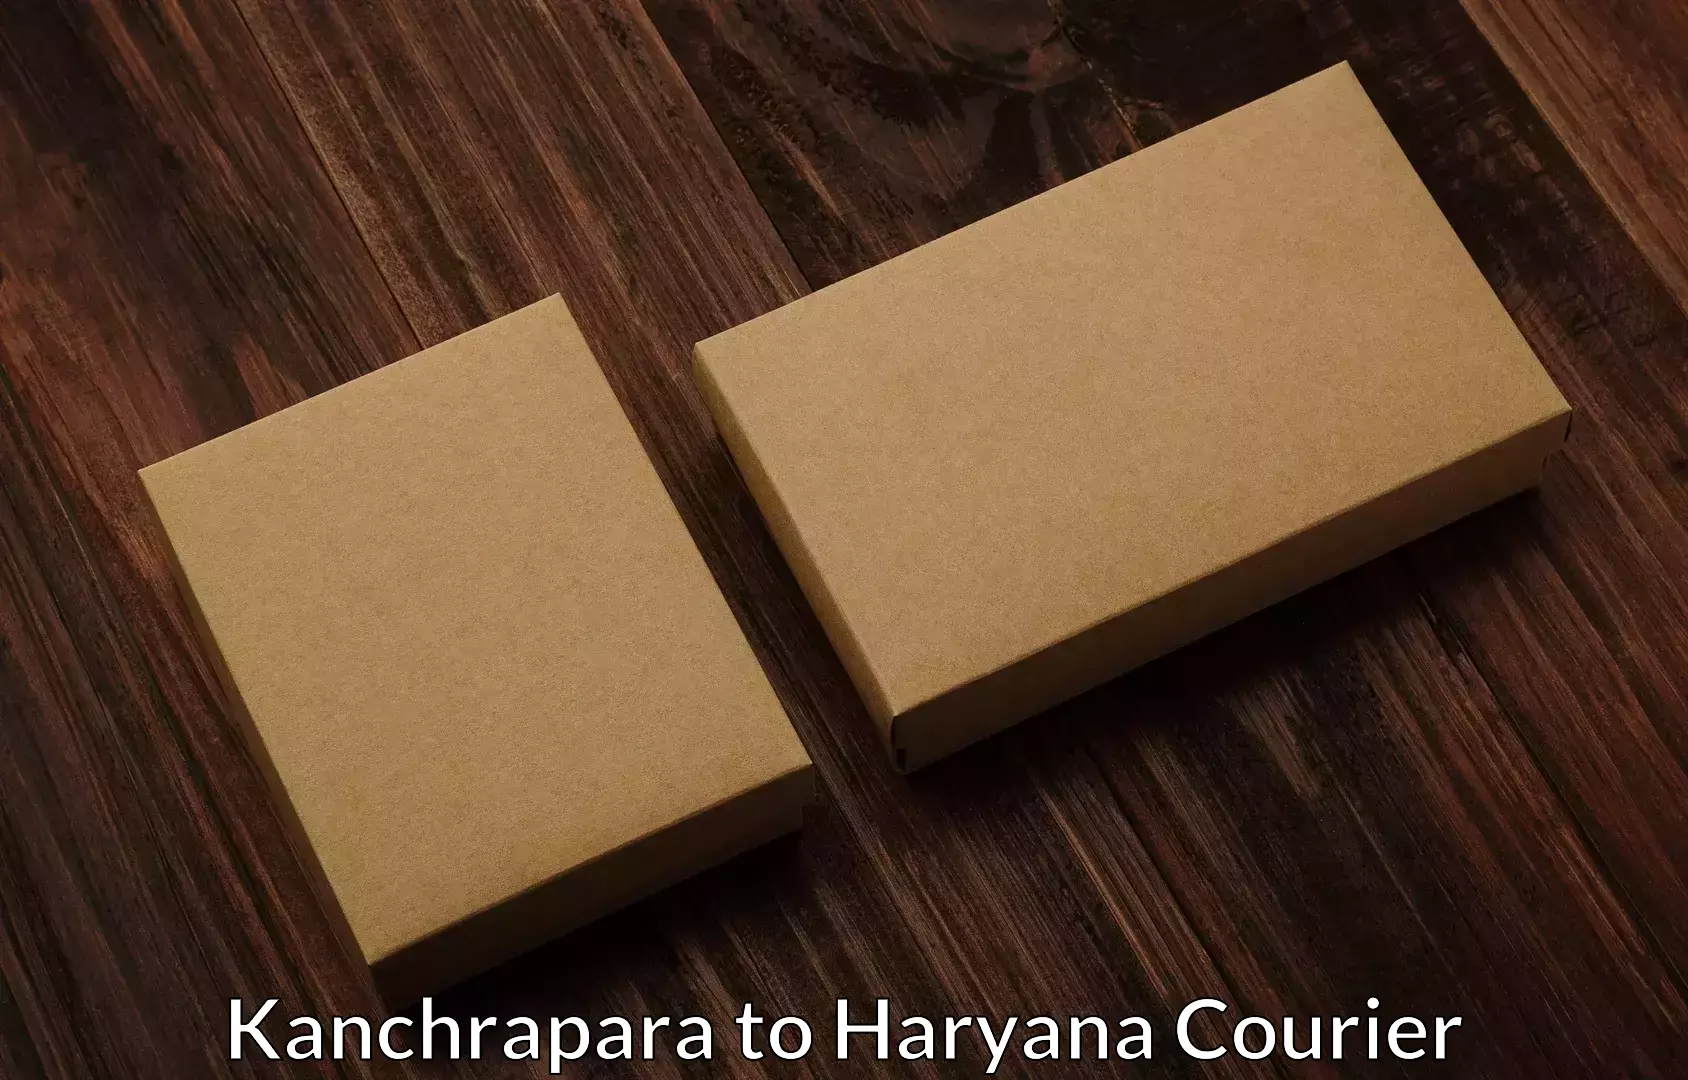 Professional home movers Kanchrapara to Panchkula